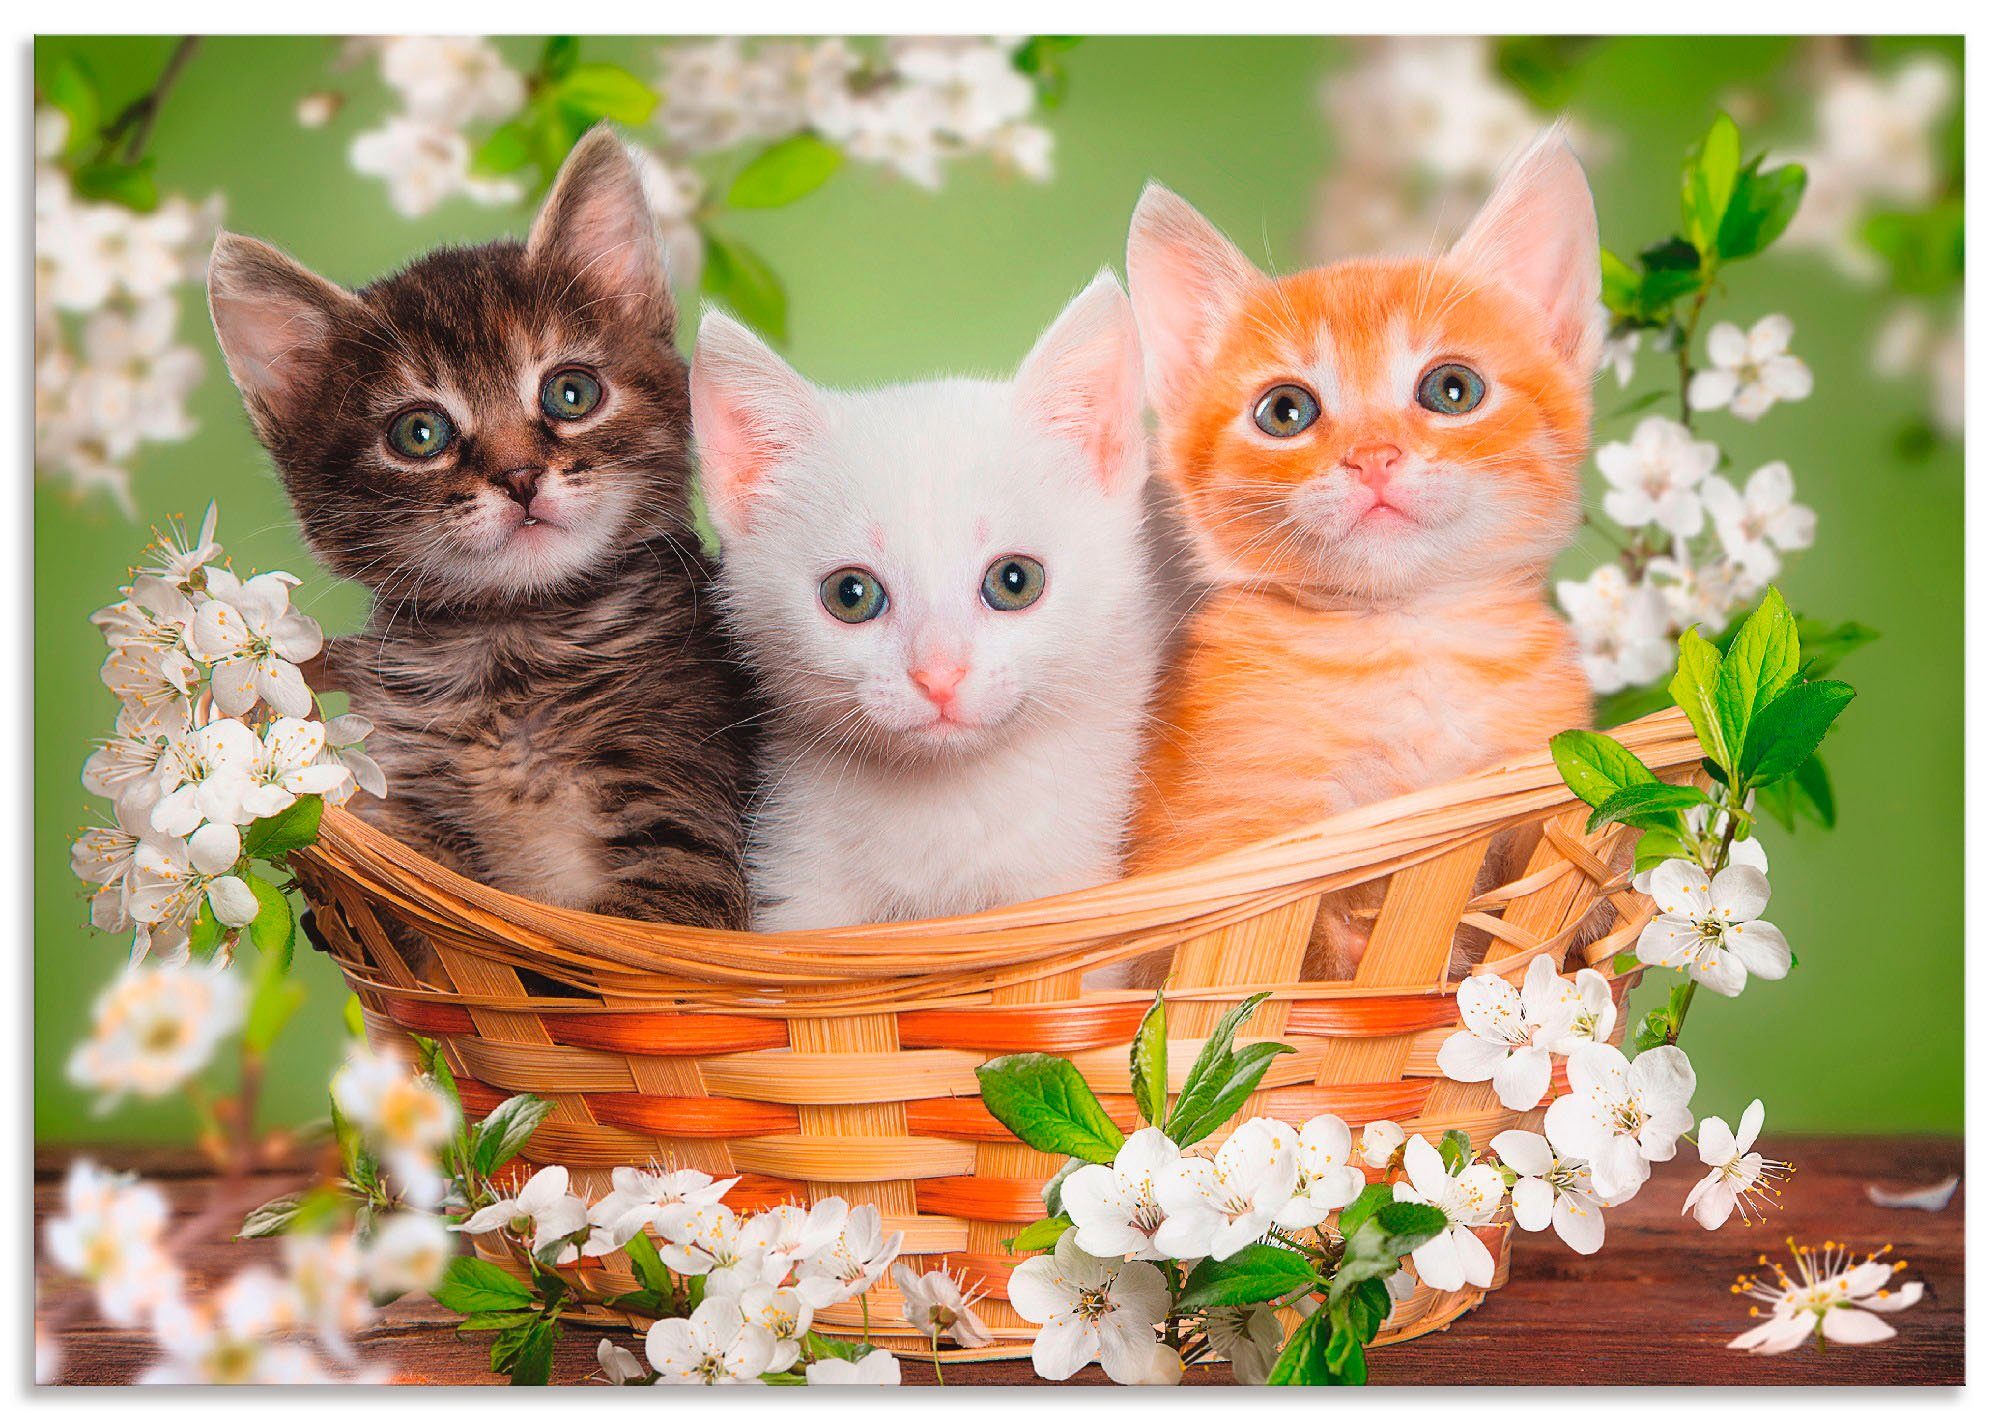 Artland Wandbild Katzen sitzen in einem Korb, Haustiere (1 St), als Alubild, Leinwandbild, Wandaufkleber oder Poster in versch. Größen